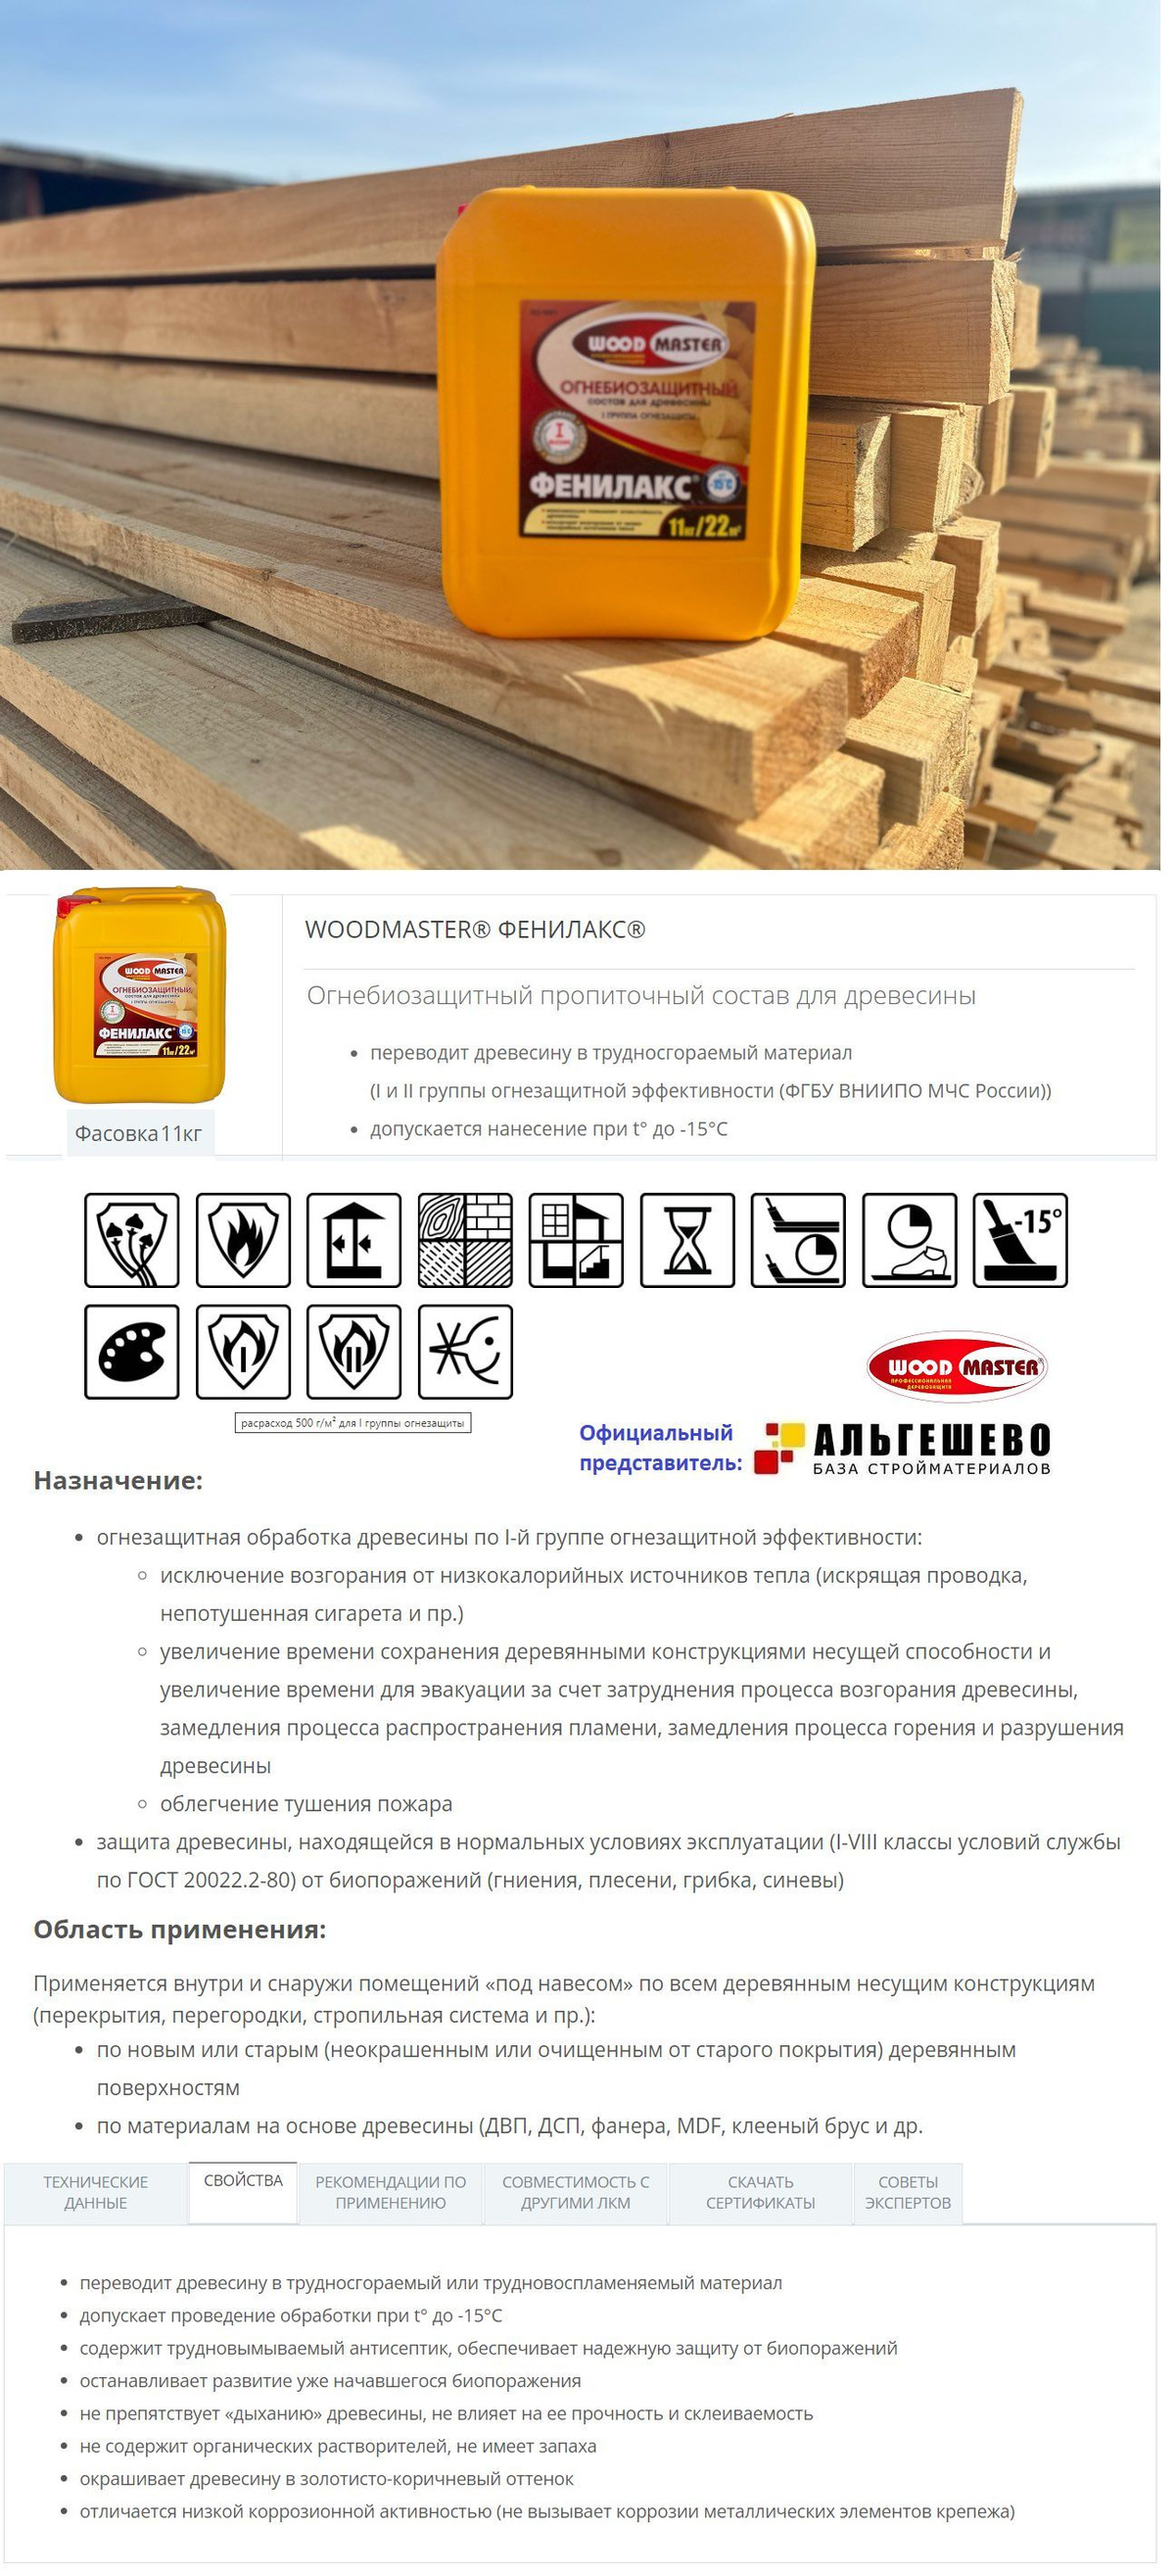 WOODMASTER ФЕНИЛАКС Огнебиозащитный пропиточный состав для древесины (I-я и II-я гр. огнезащитной эффективности)